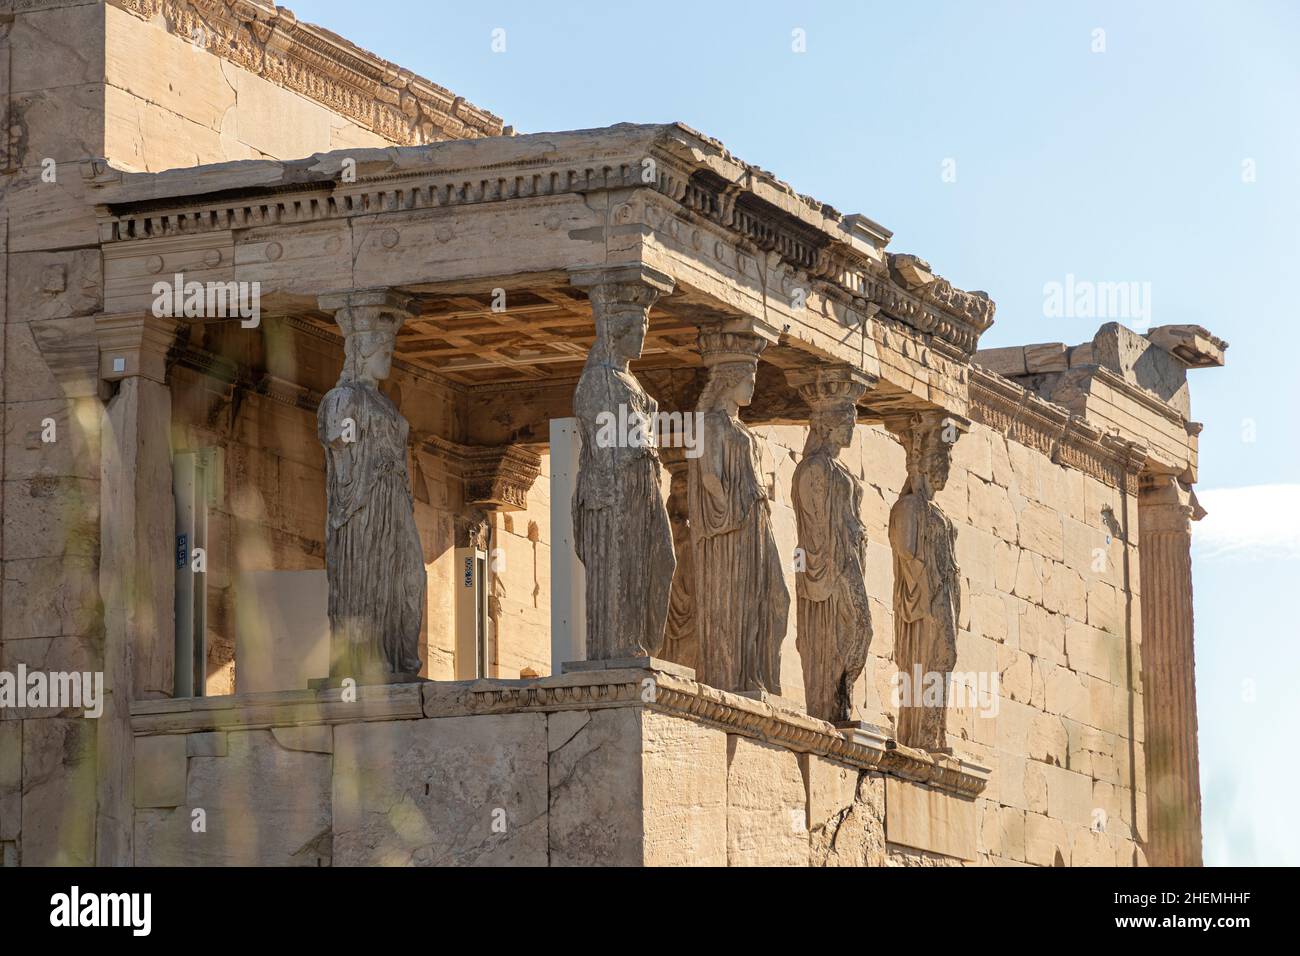 Athen, Griechenland. Die Maiden-Veranda des Erechtheion-Tempels in der Akropolis mit den Skulpturen, die als Karyatiden bekannt sind Stockfoto